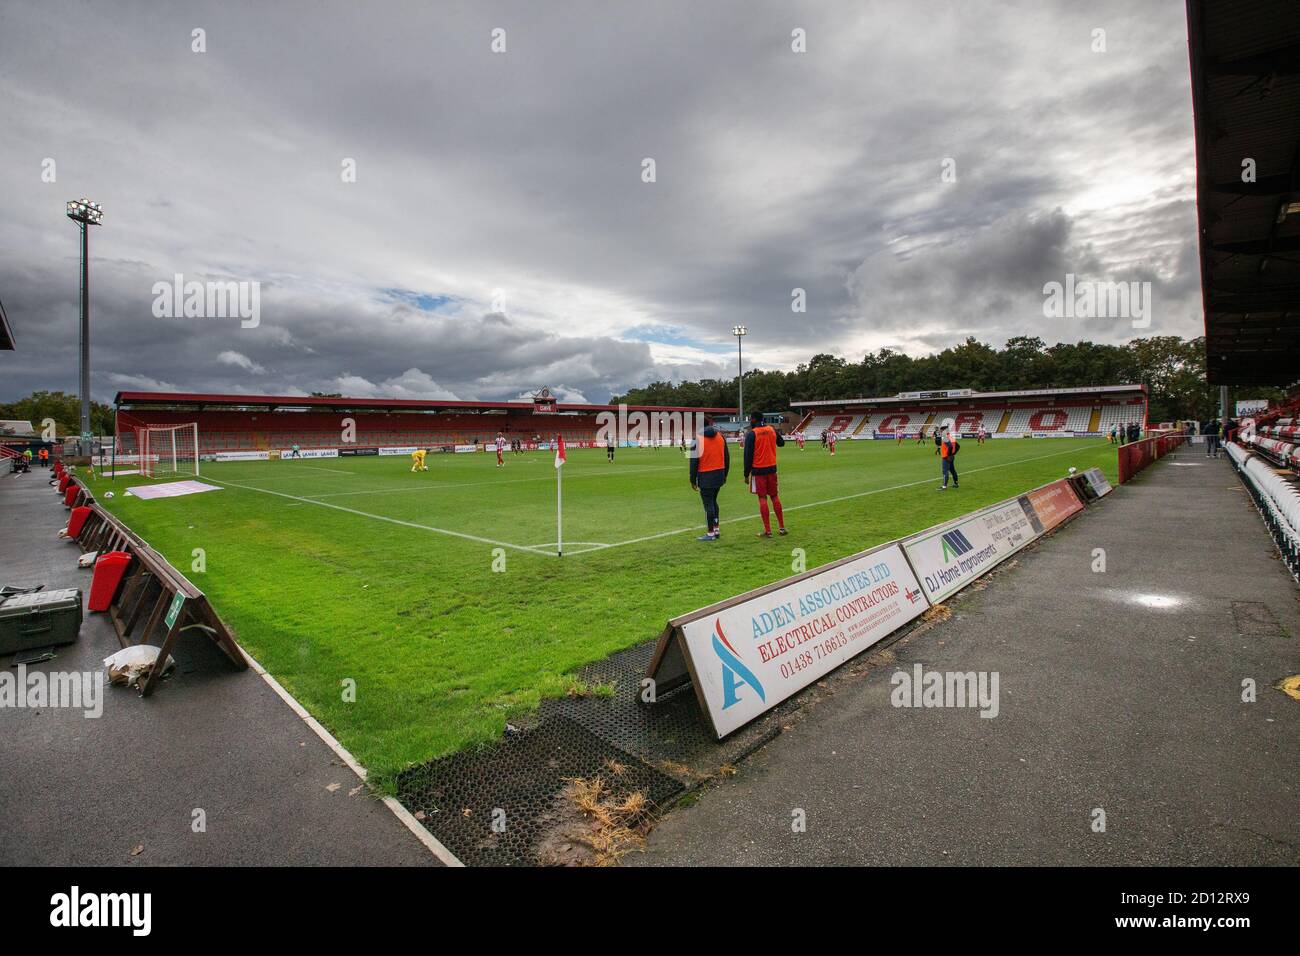 League 2 Fußballspiel, das während gespielt wird in leerem Stadion Coronavirus-Pandemie hinter verschlossenen Türen Protokoll in England Stockfoto